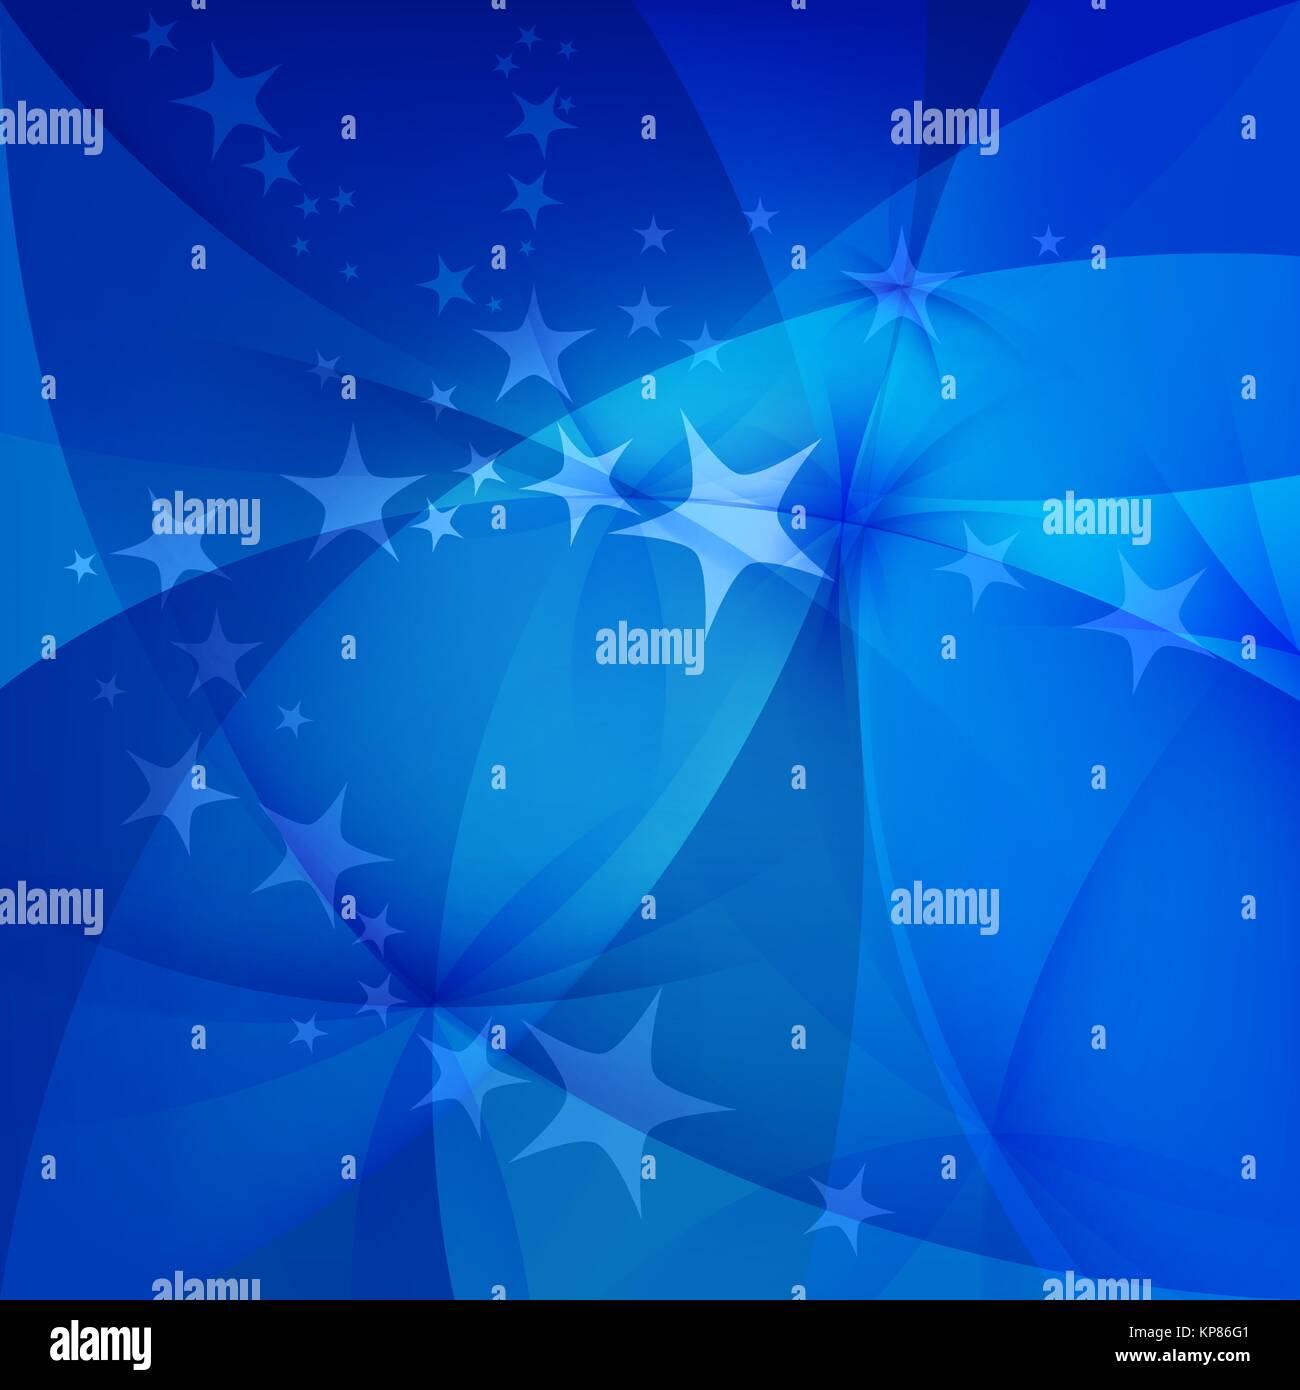 Abstrakter blauer Hintergrund mit Sternen Stock Vektor